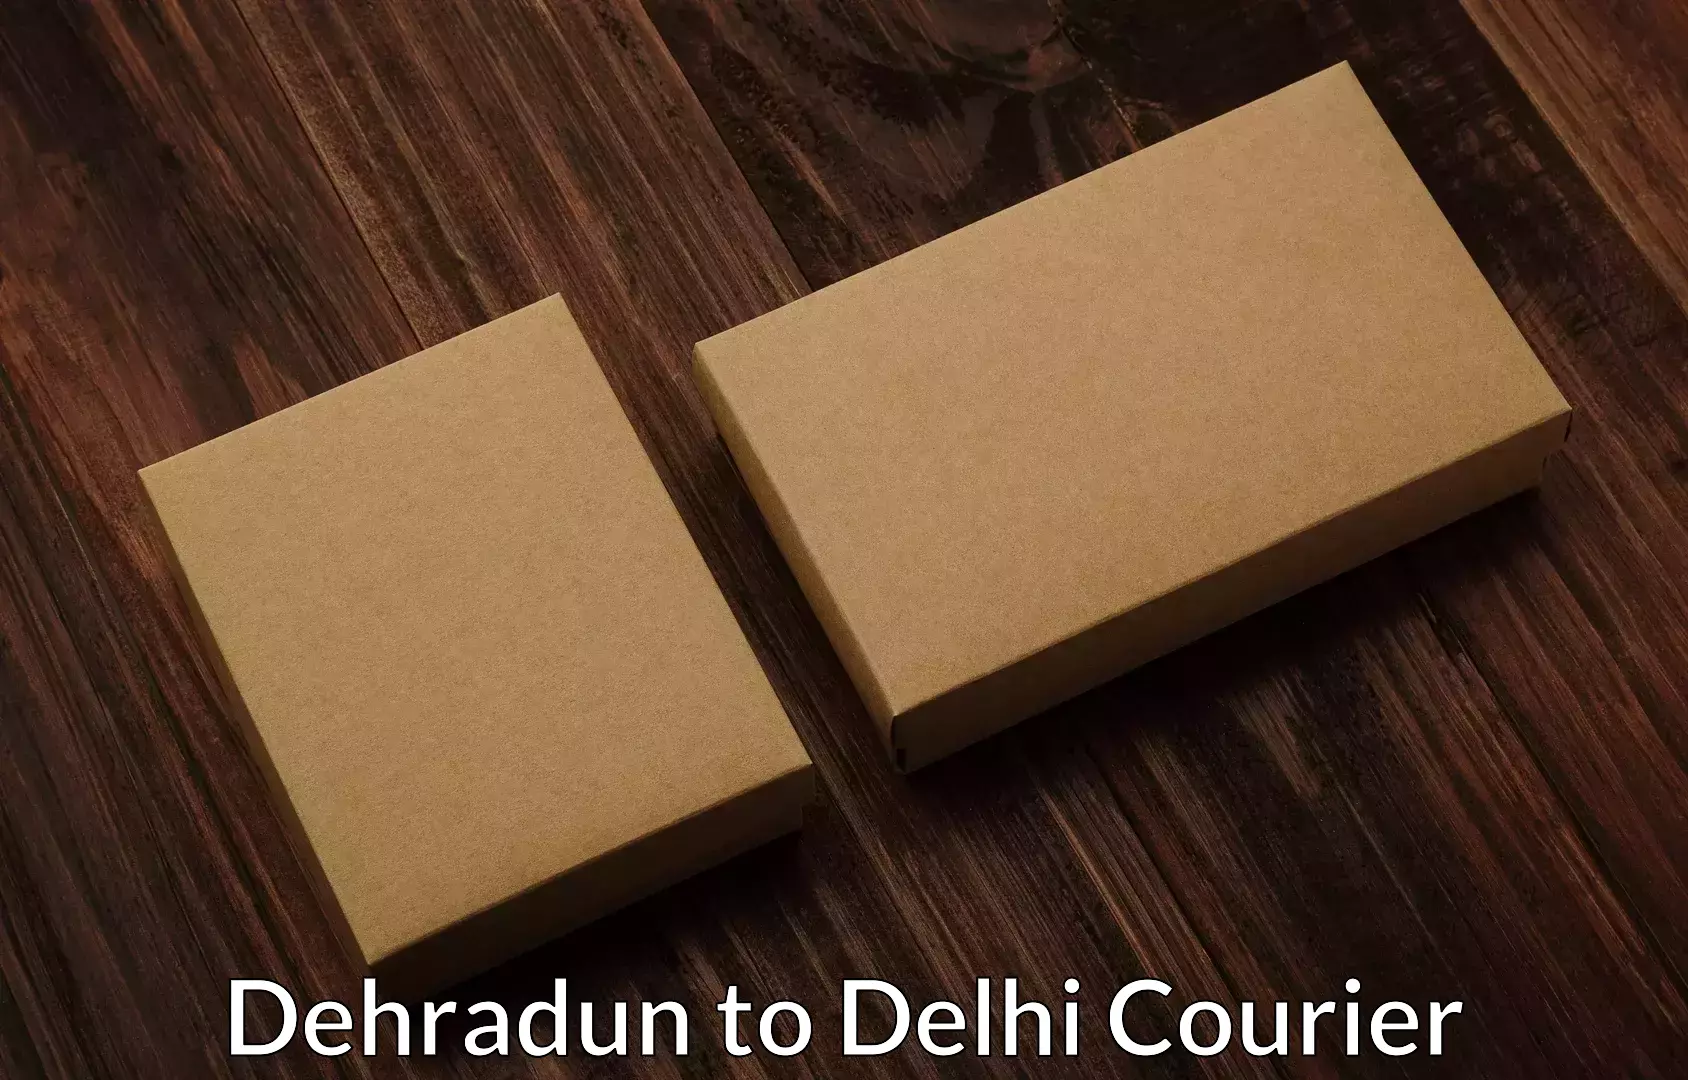 Furniture moving specialists Dehradun to Delhi